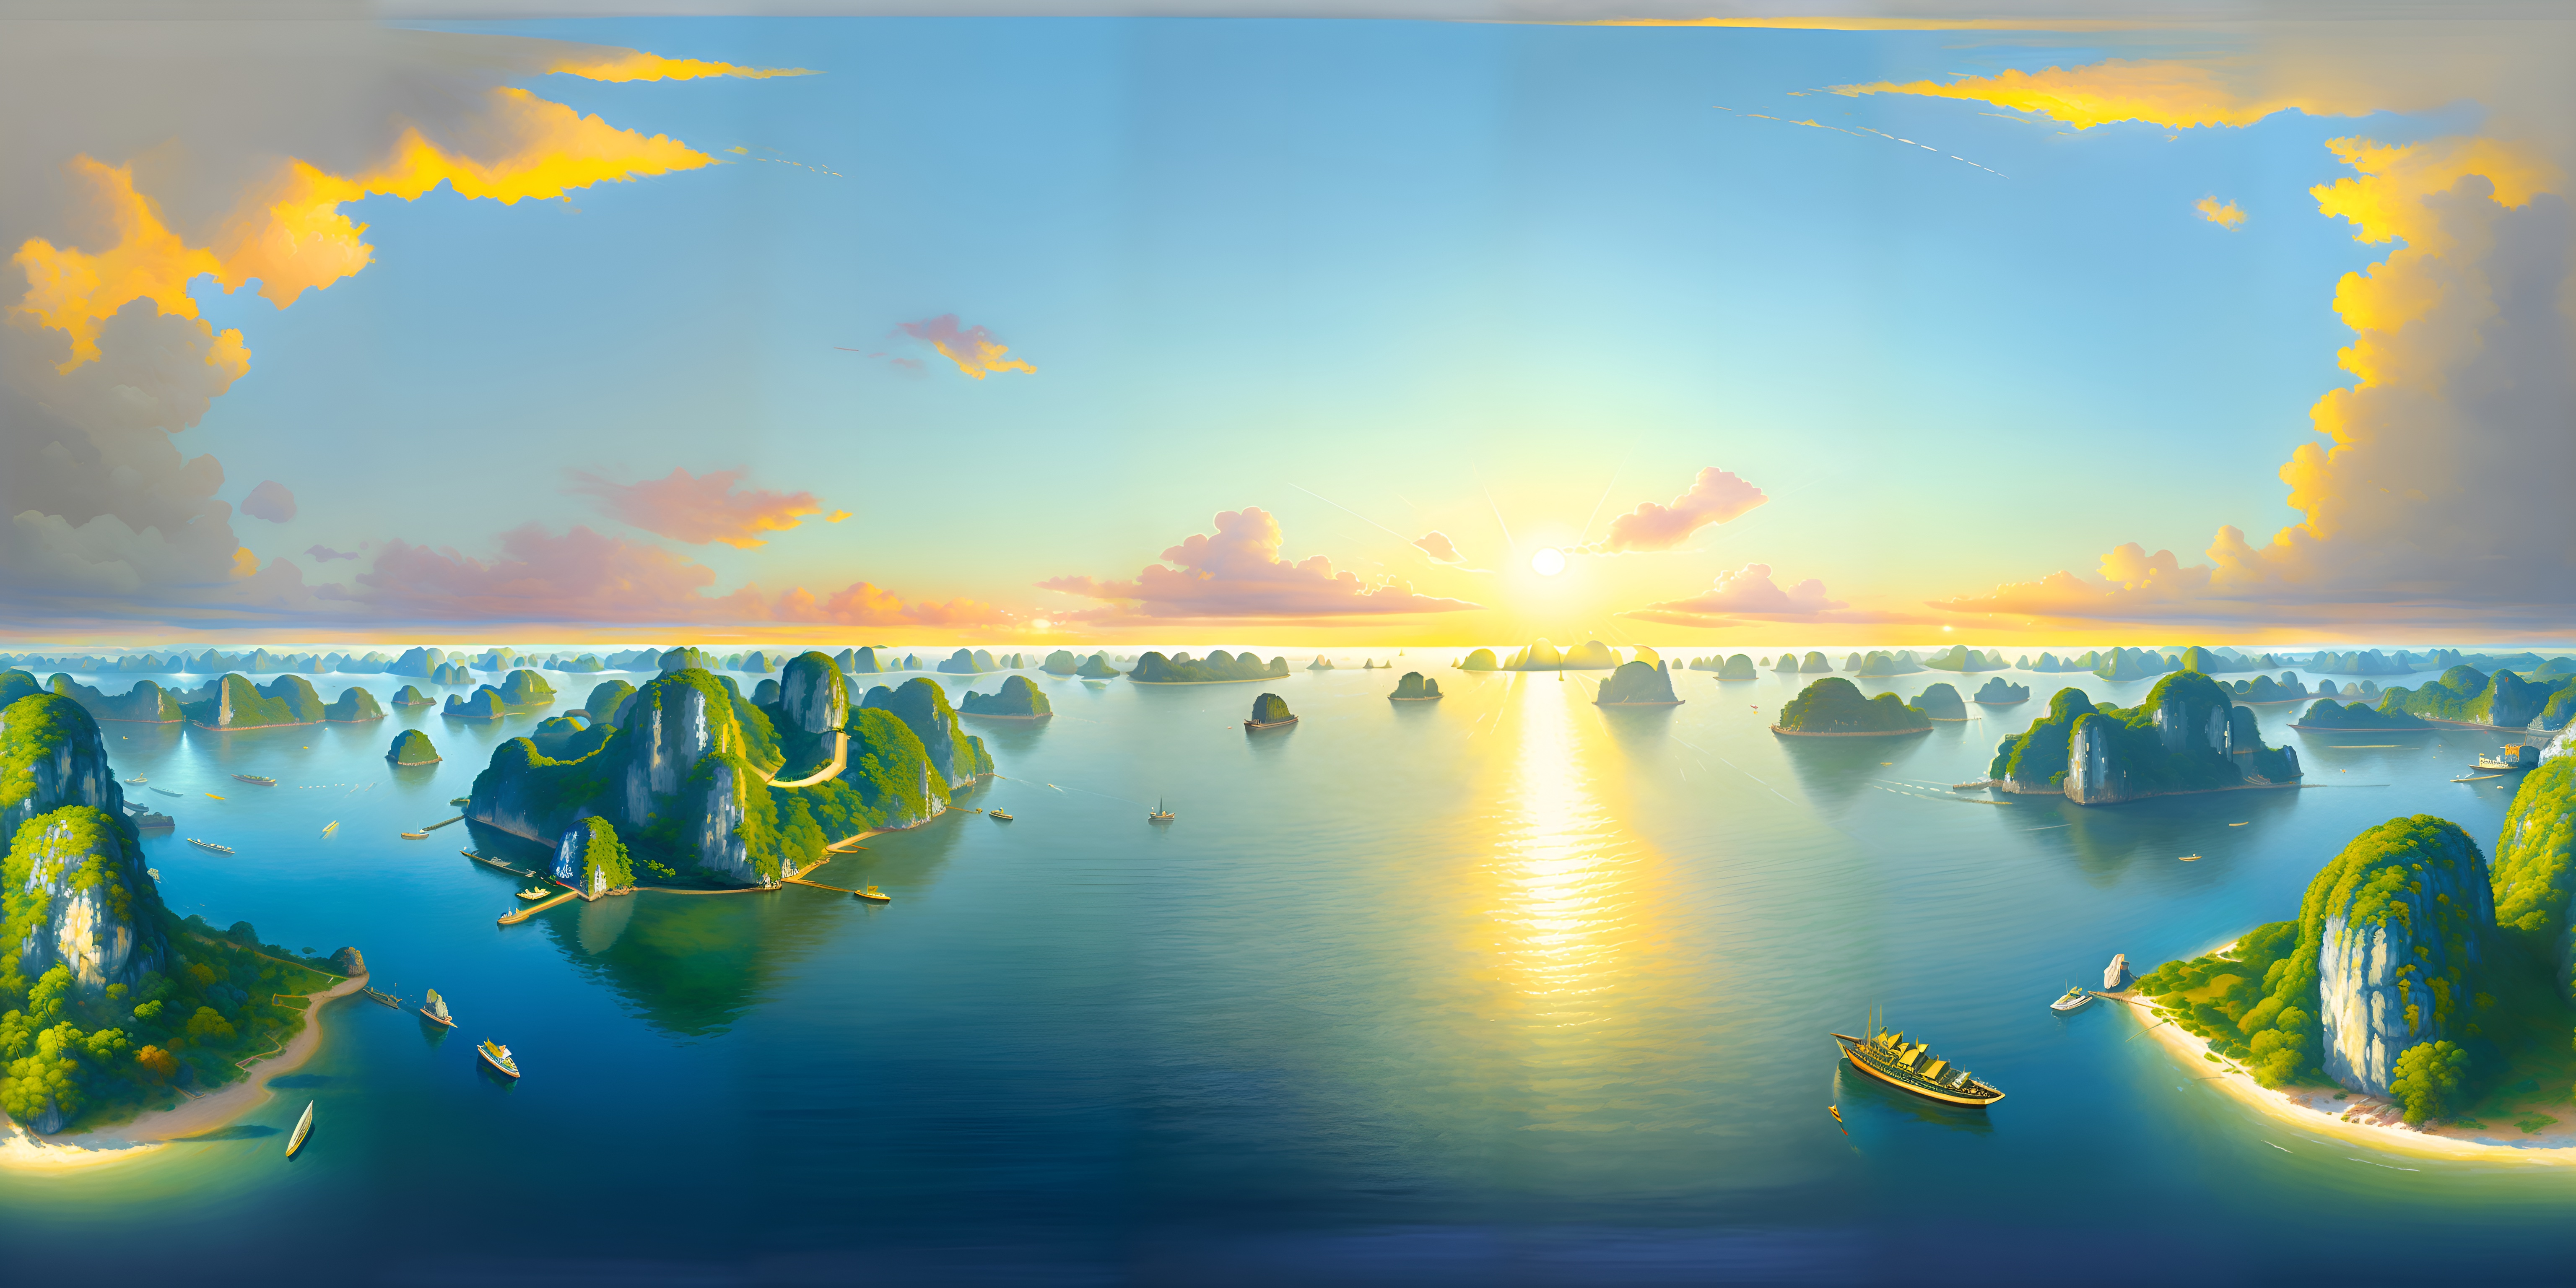 General 6144x3072 phong cảnh  bải biển VỊNH HẠ LONG PHONG CẢNH NHẬT BẢN SÁNG TẠO HOA ANH ĐÀO NHẬT BẢN AI art digital art wide screen ultrawide water sky clouds island ship sea